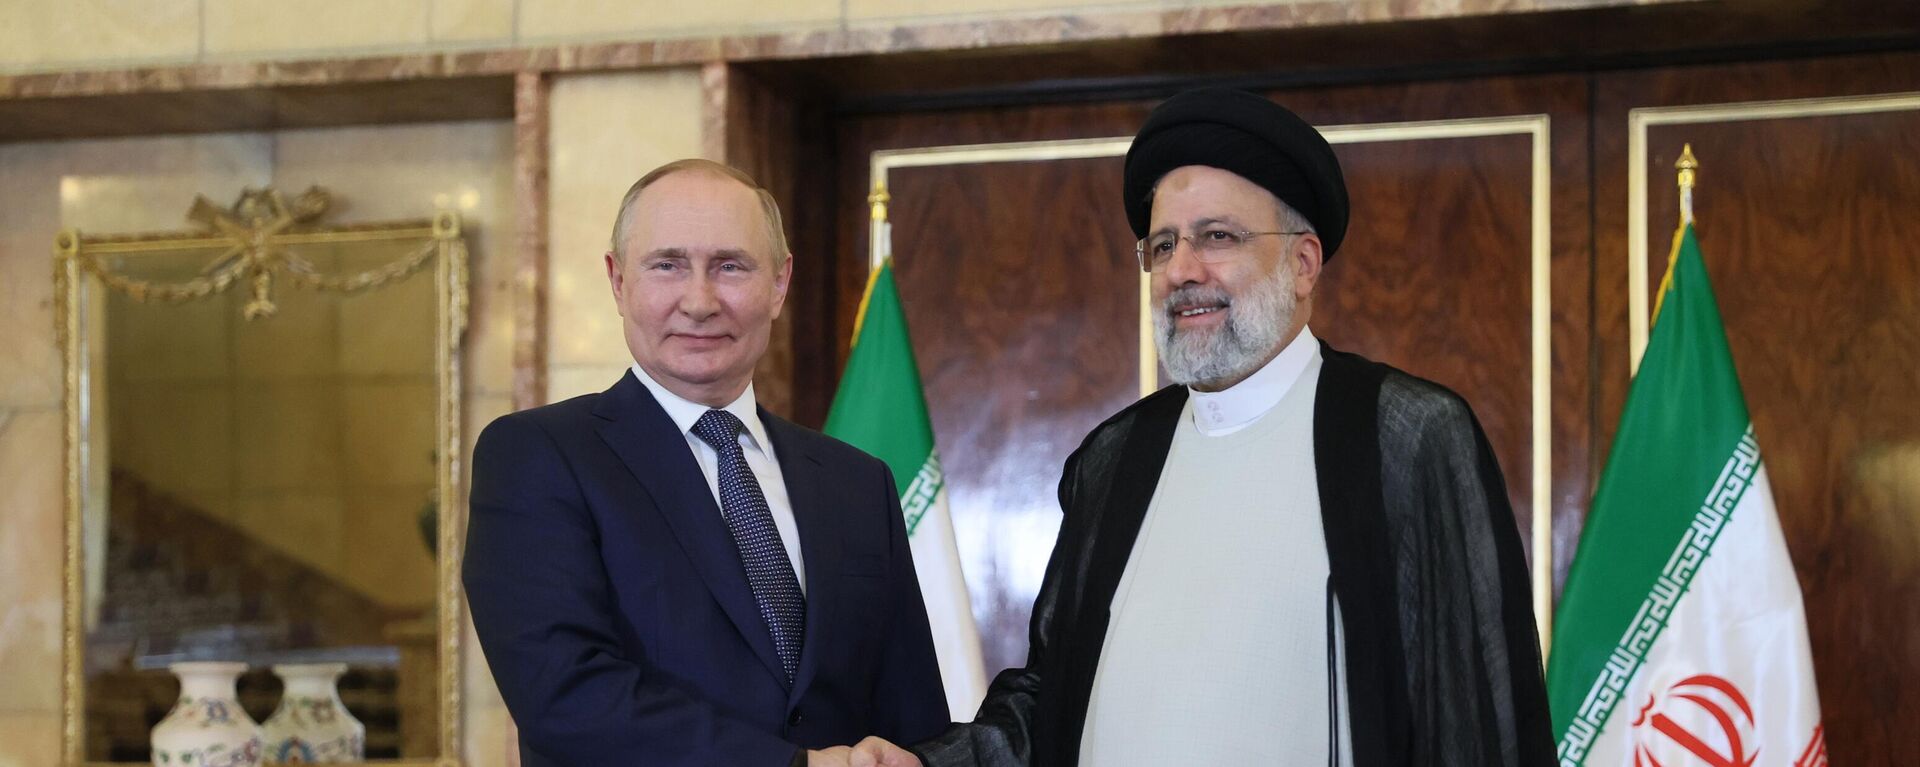 Presidente russo, Vladimir Putin (à esquerda), se reúne com o presidente iraniano, Ebrahim Raisi, em Teerã, em 19 de julho de 2022 - Sputnik Brasil, 1920, 20.07.2022